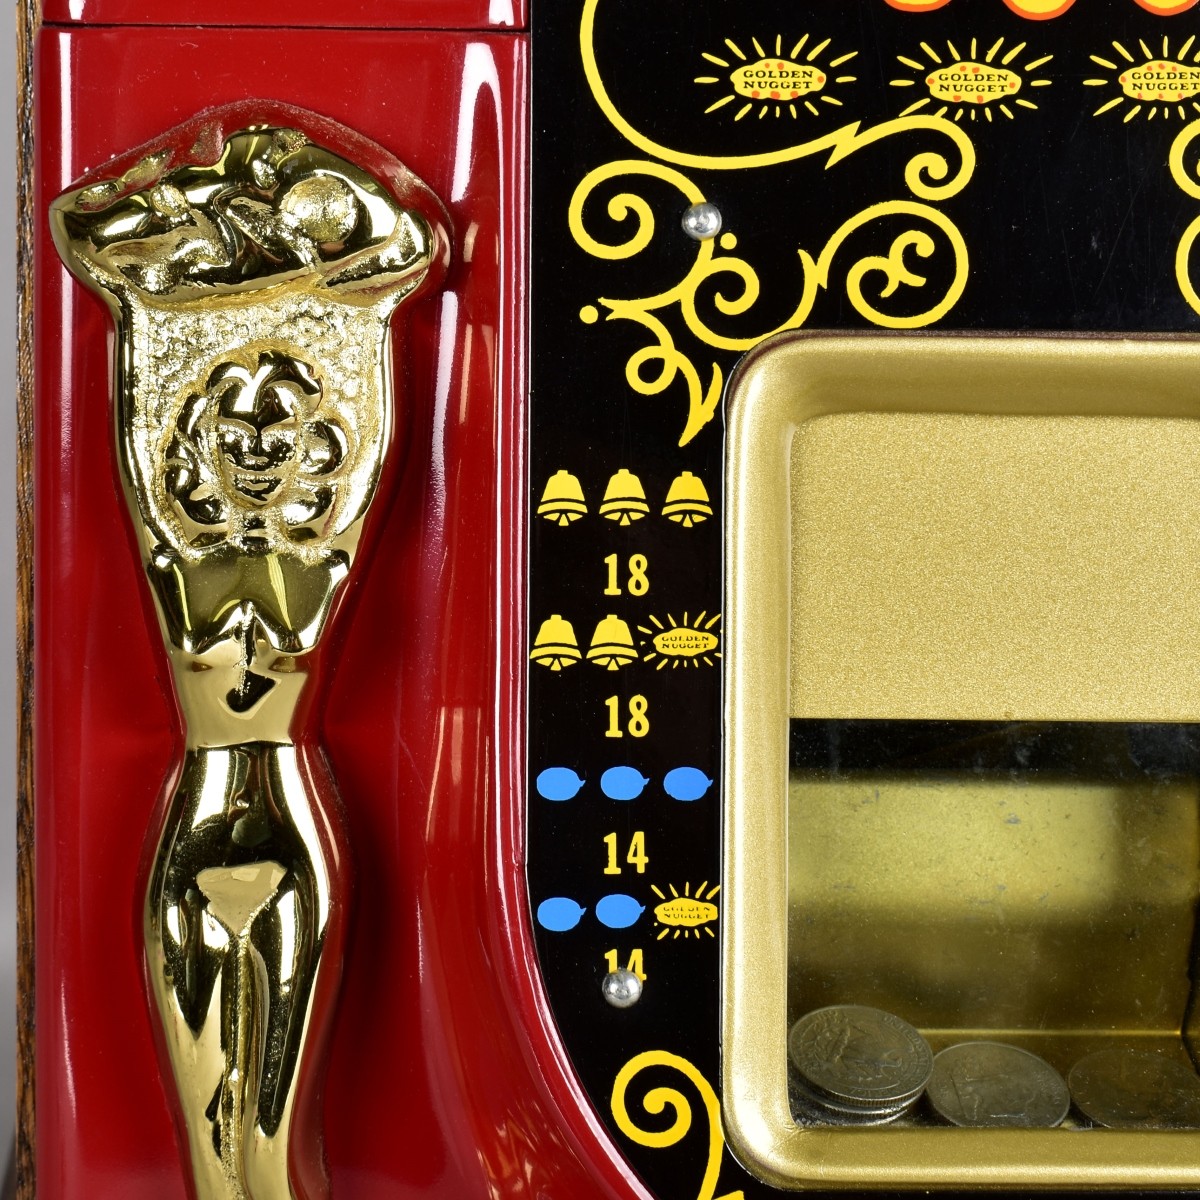 Mills 25 Cent Golden Nugget Slot Machine